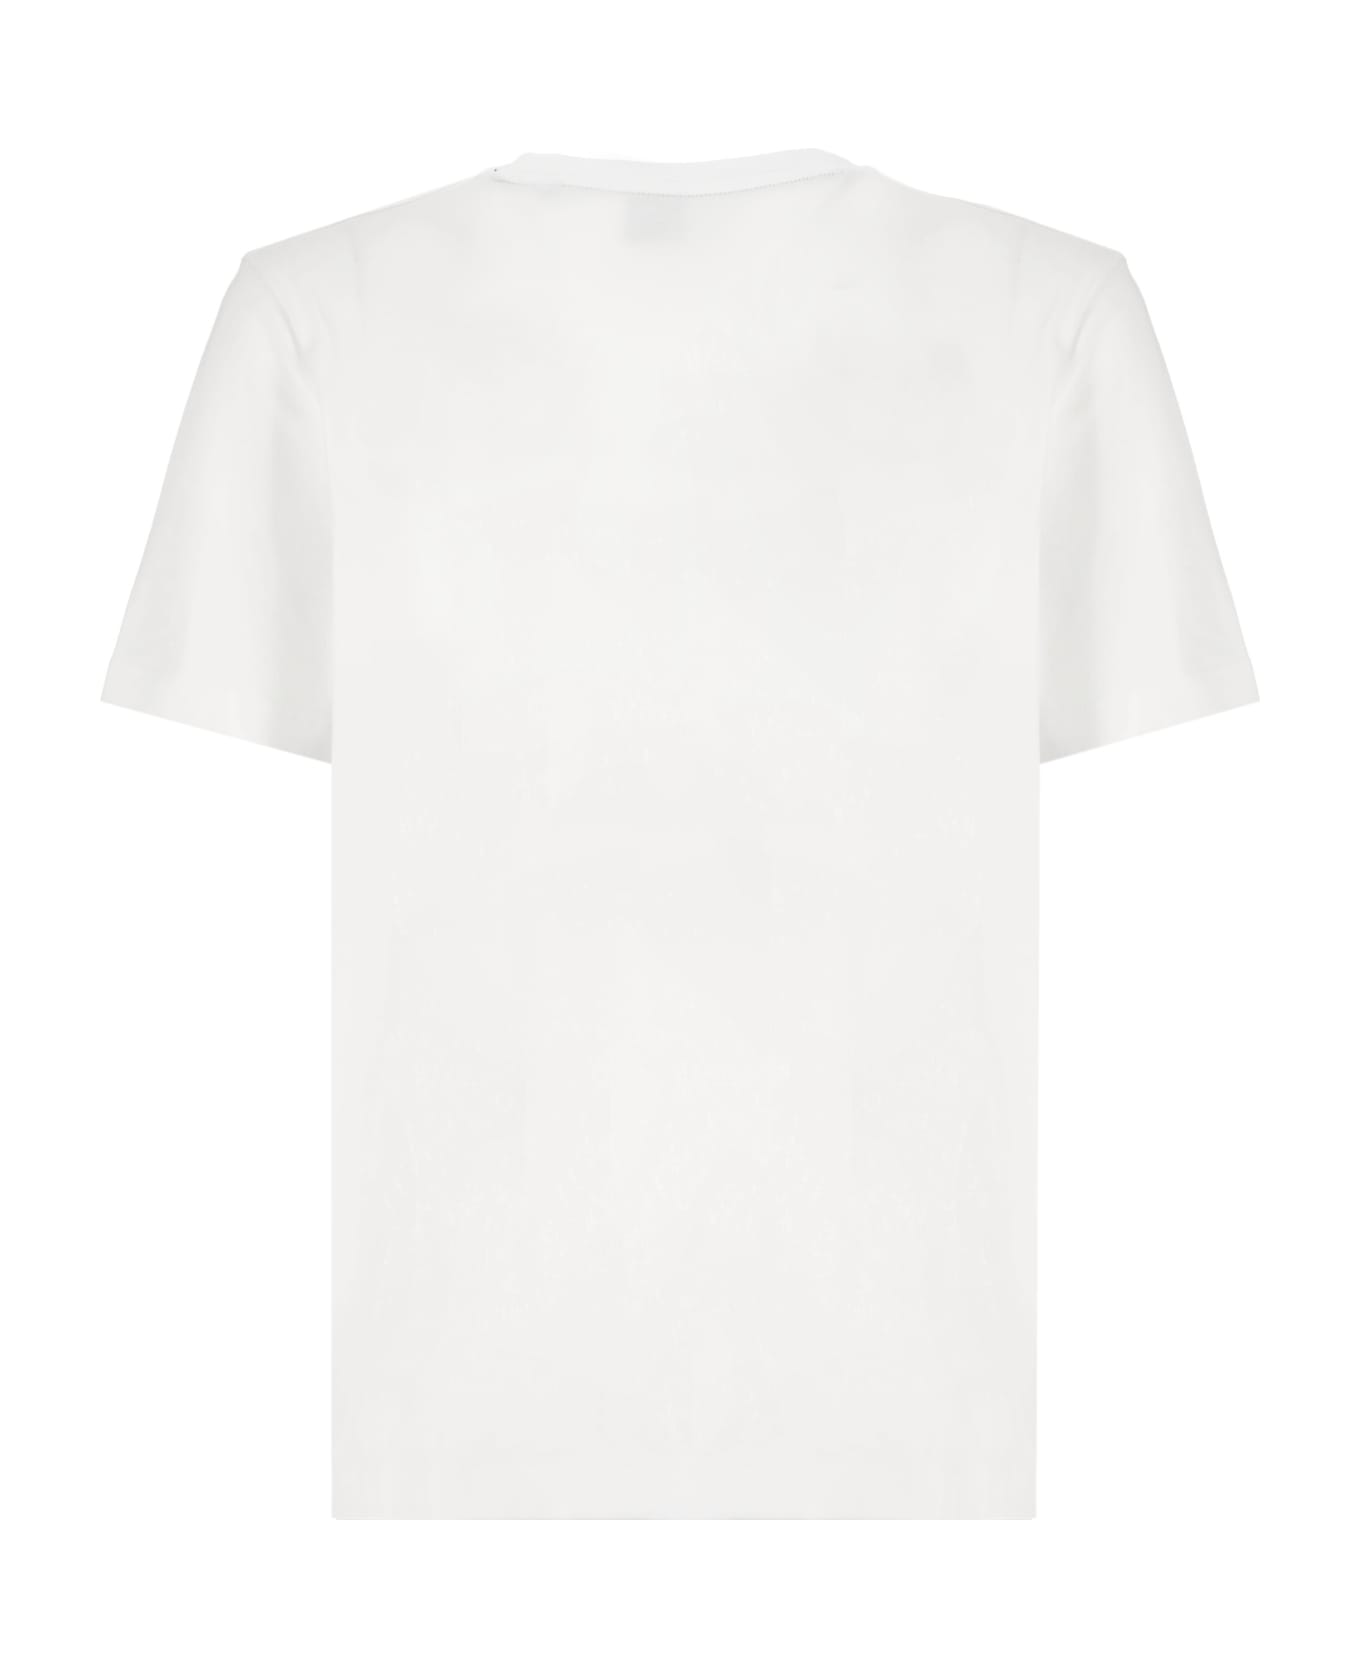 Hugo Boss Tiburt 354 T-shirt - White